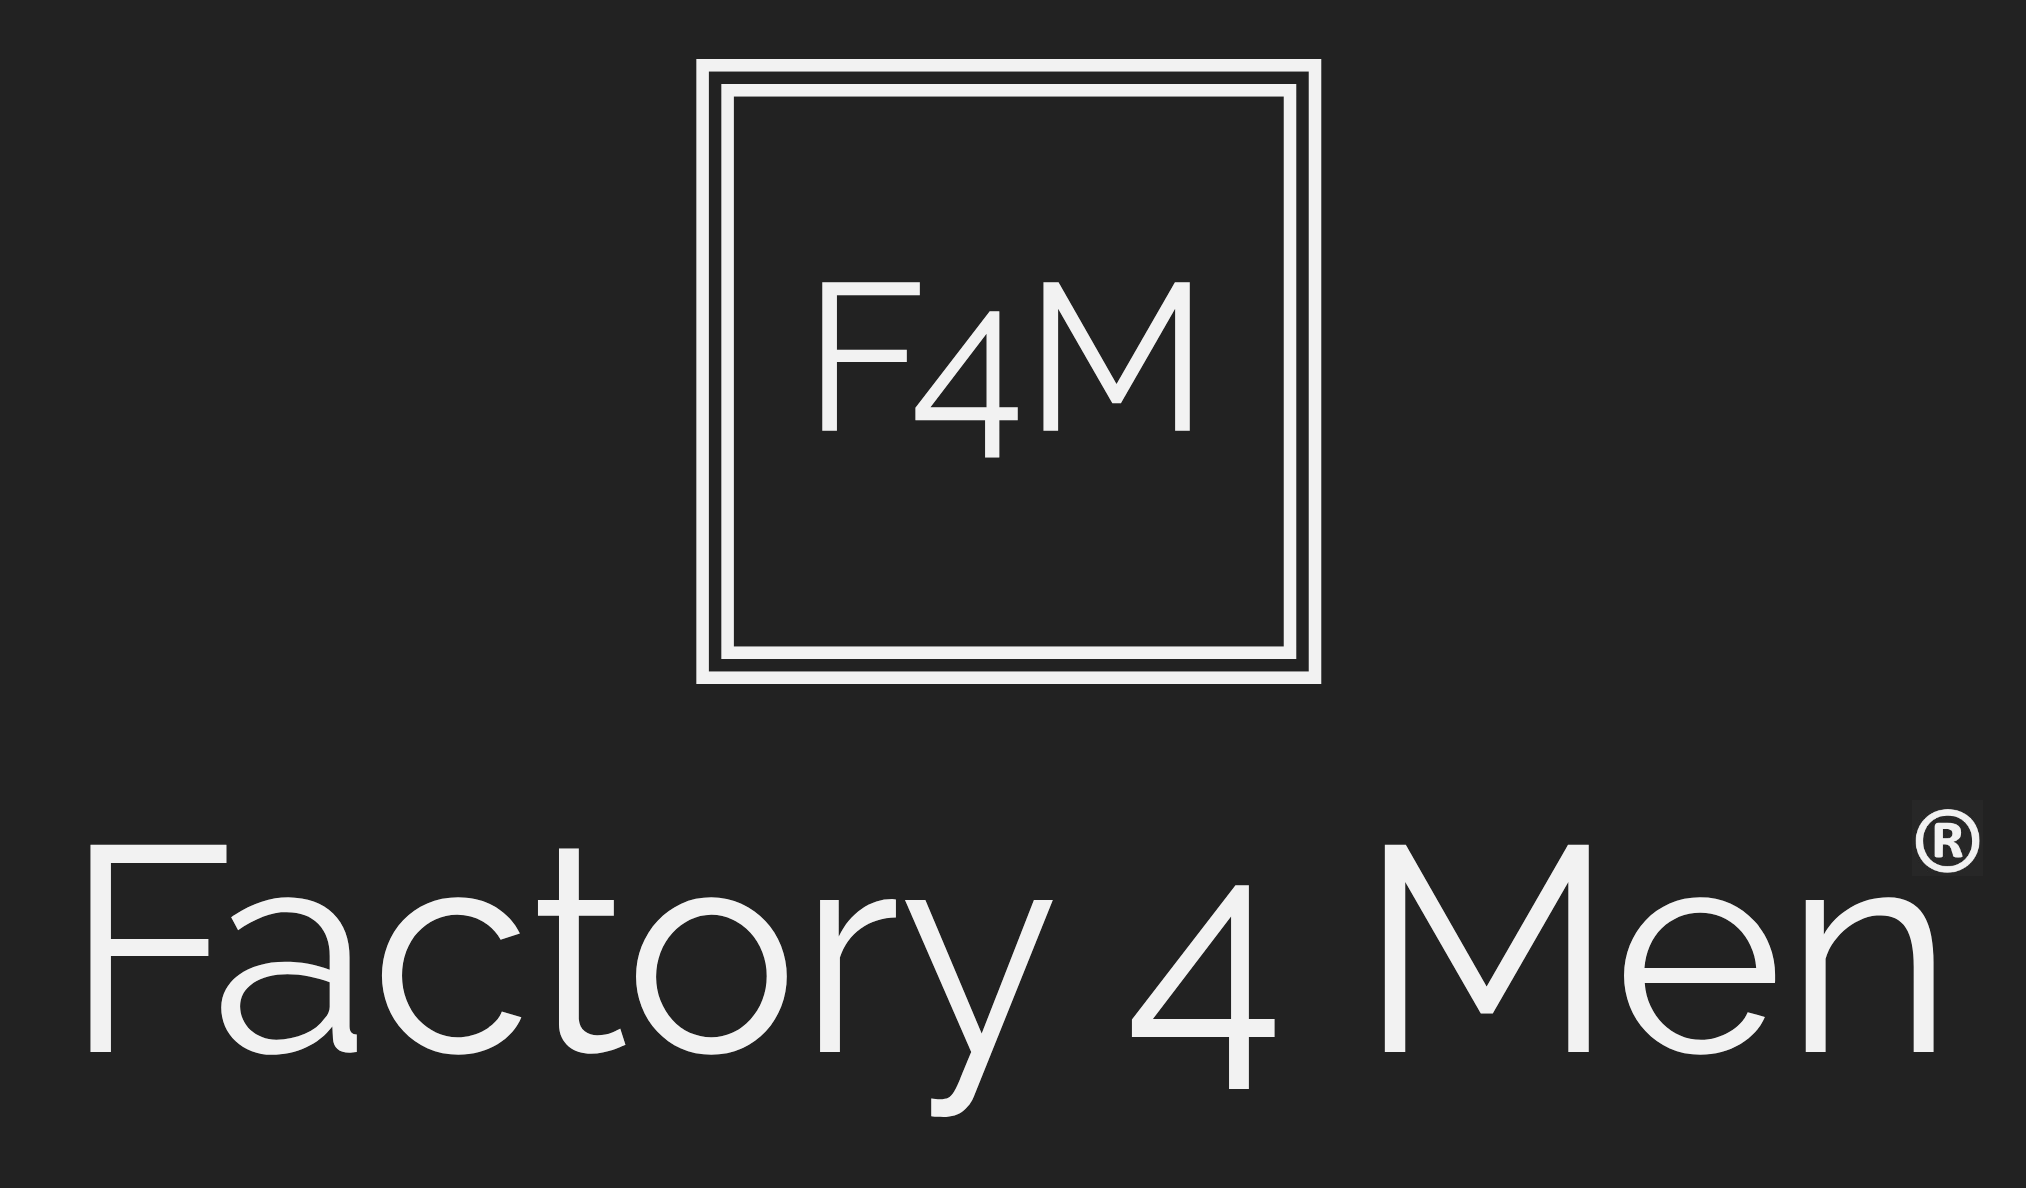 Factory 4 Men